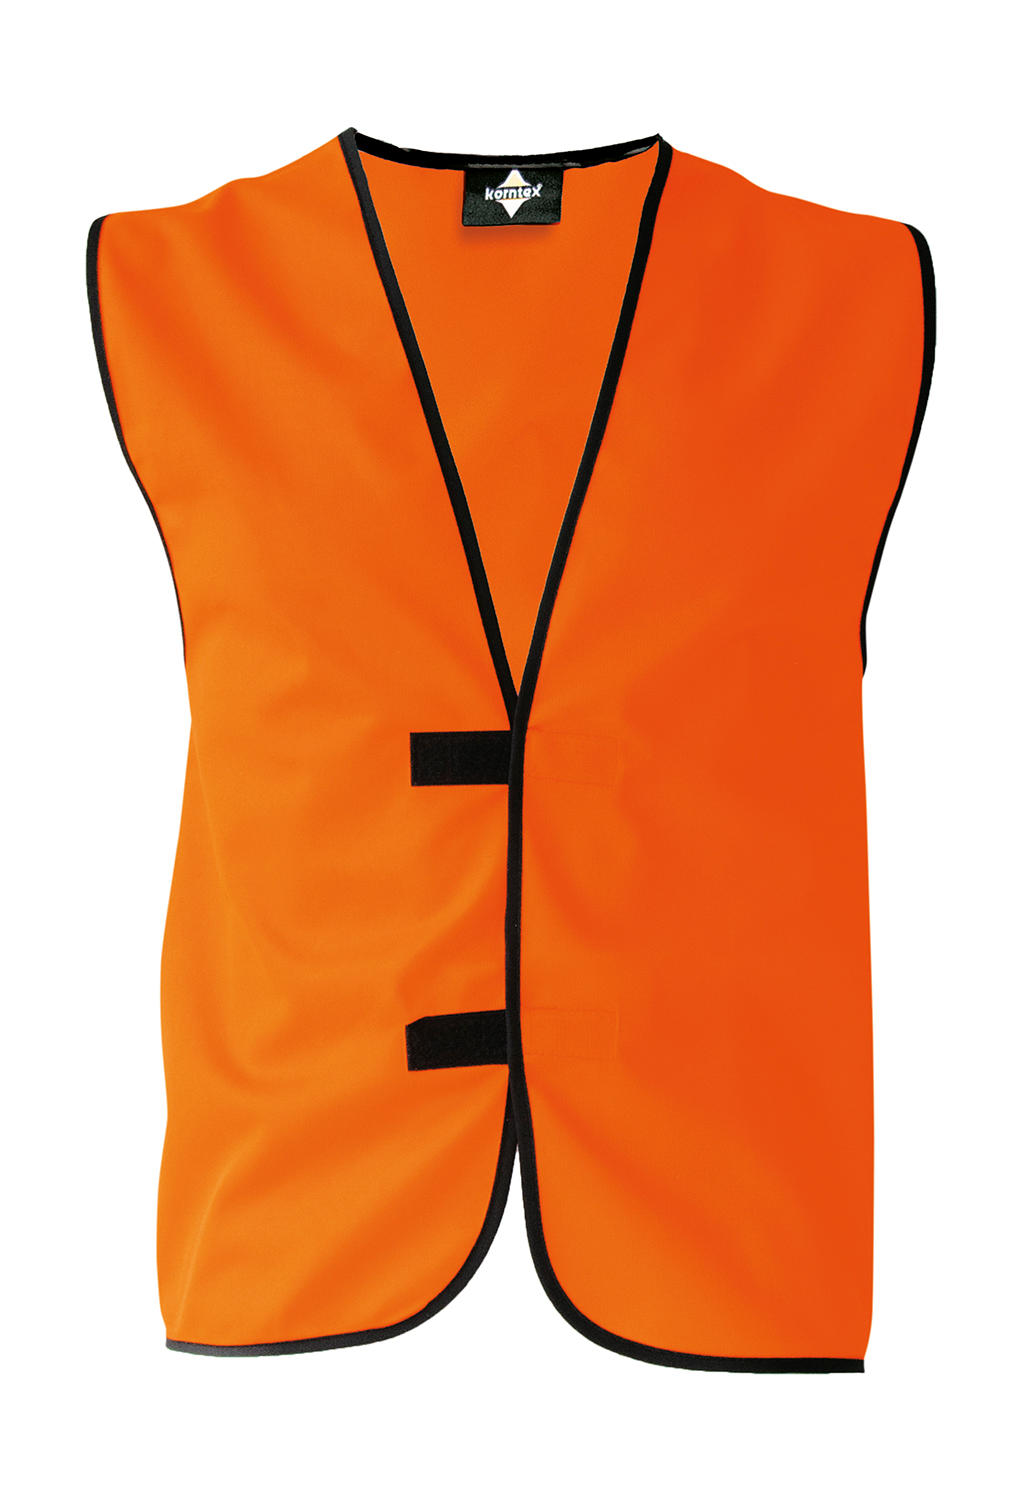 Identifikačná vesta "Leipzig" - orange